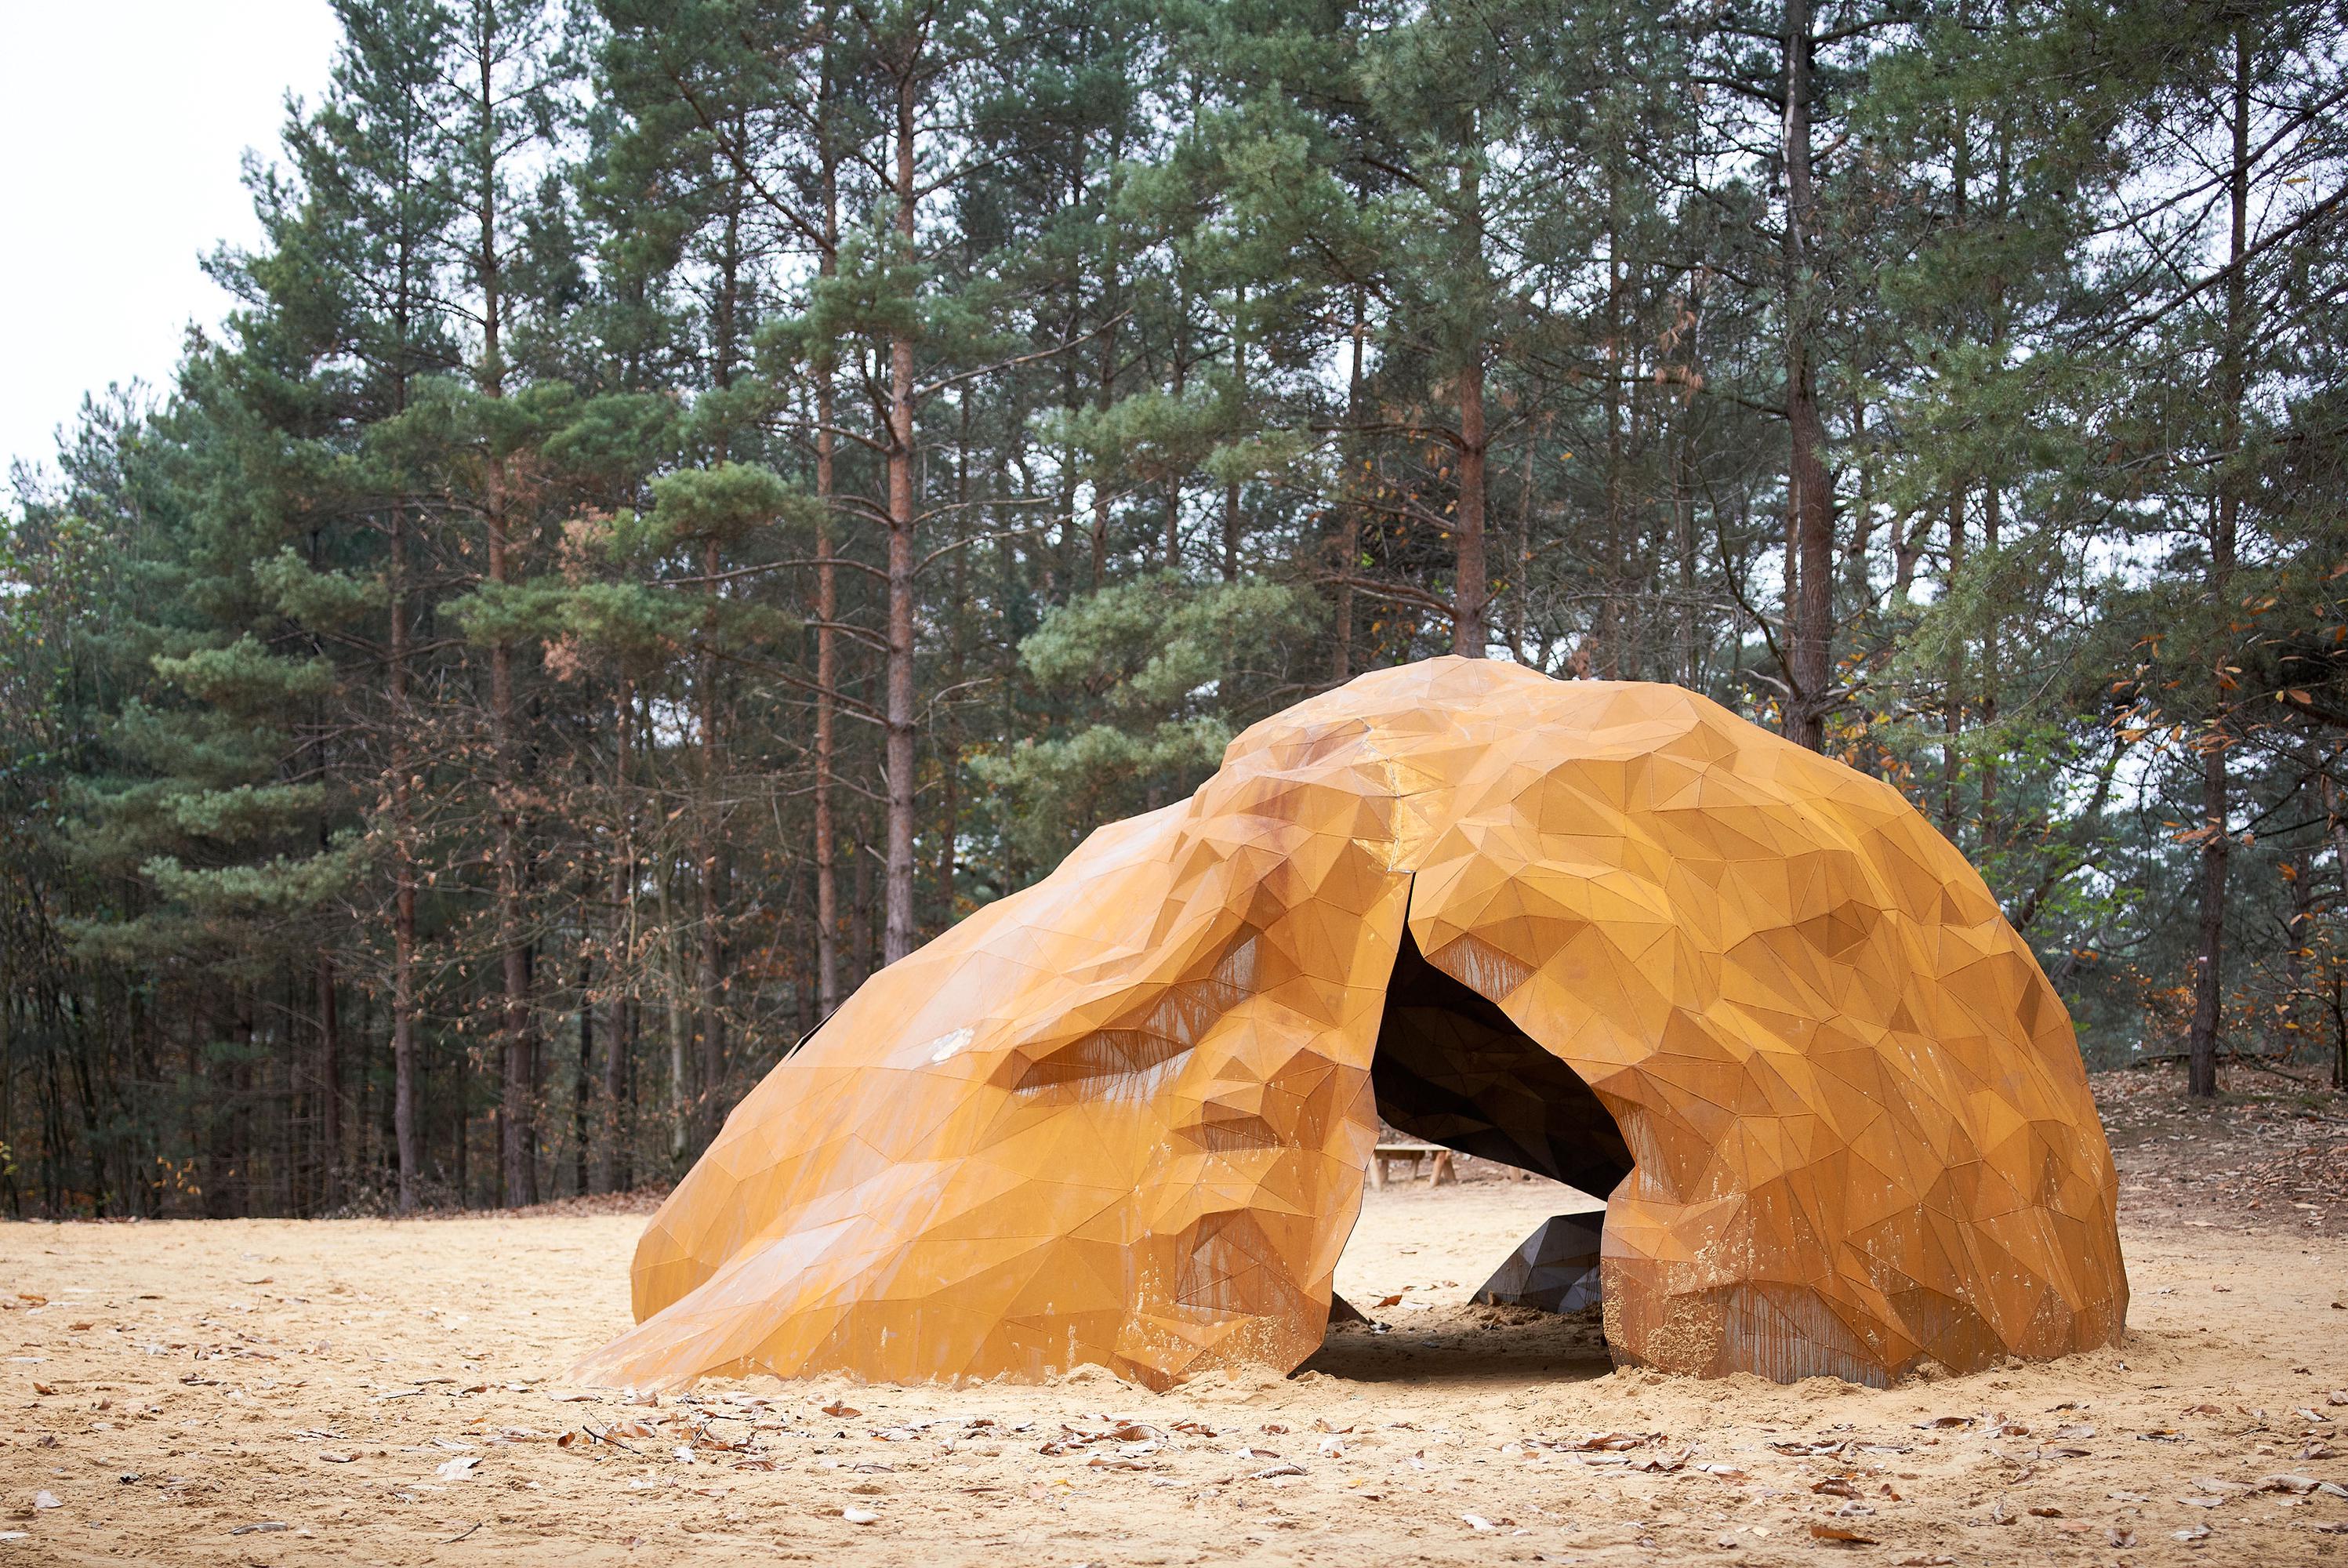 Gijs Van Vaerenbergh, Matthijs van der Burgt · A Giant Sculpture · Divisare